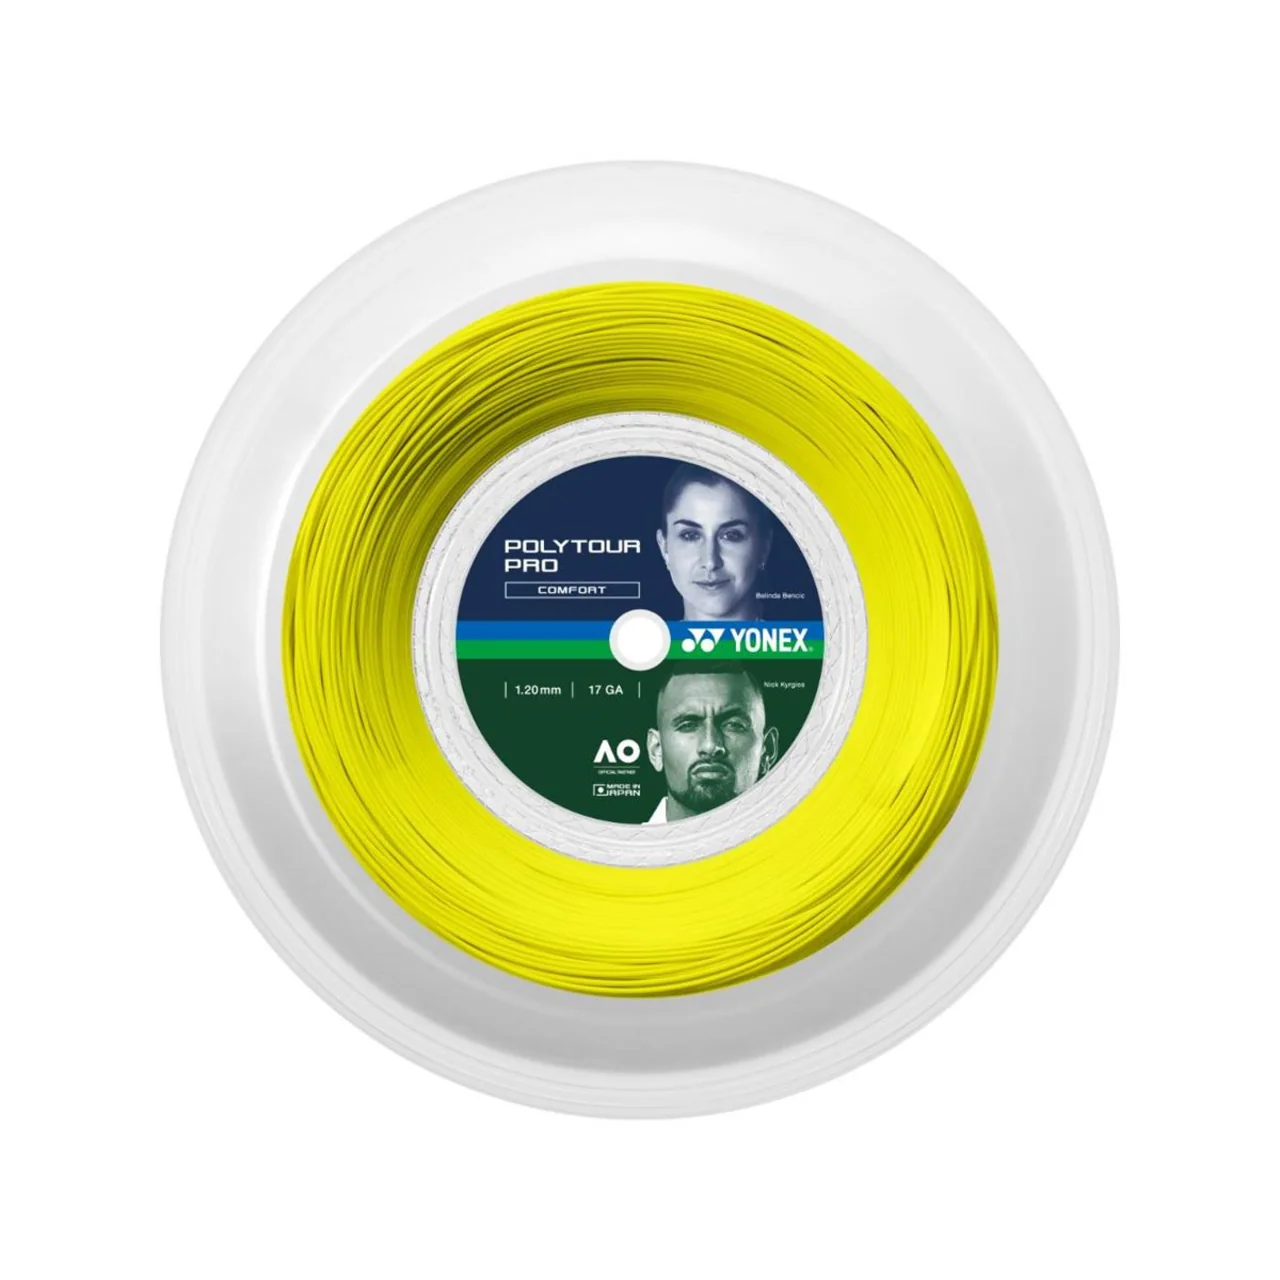 Yonex Polytour Pro Reel 200m Yellow